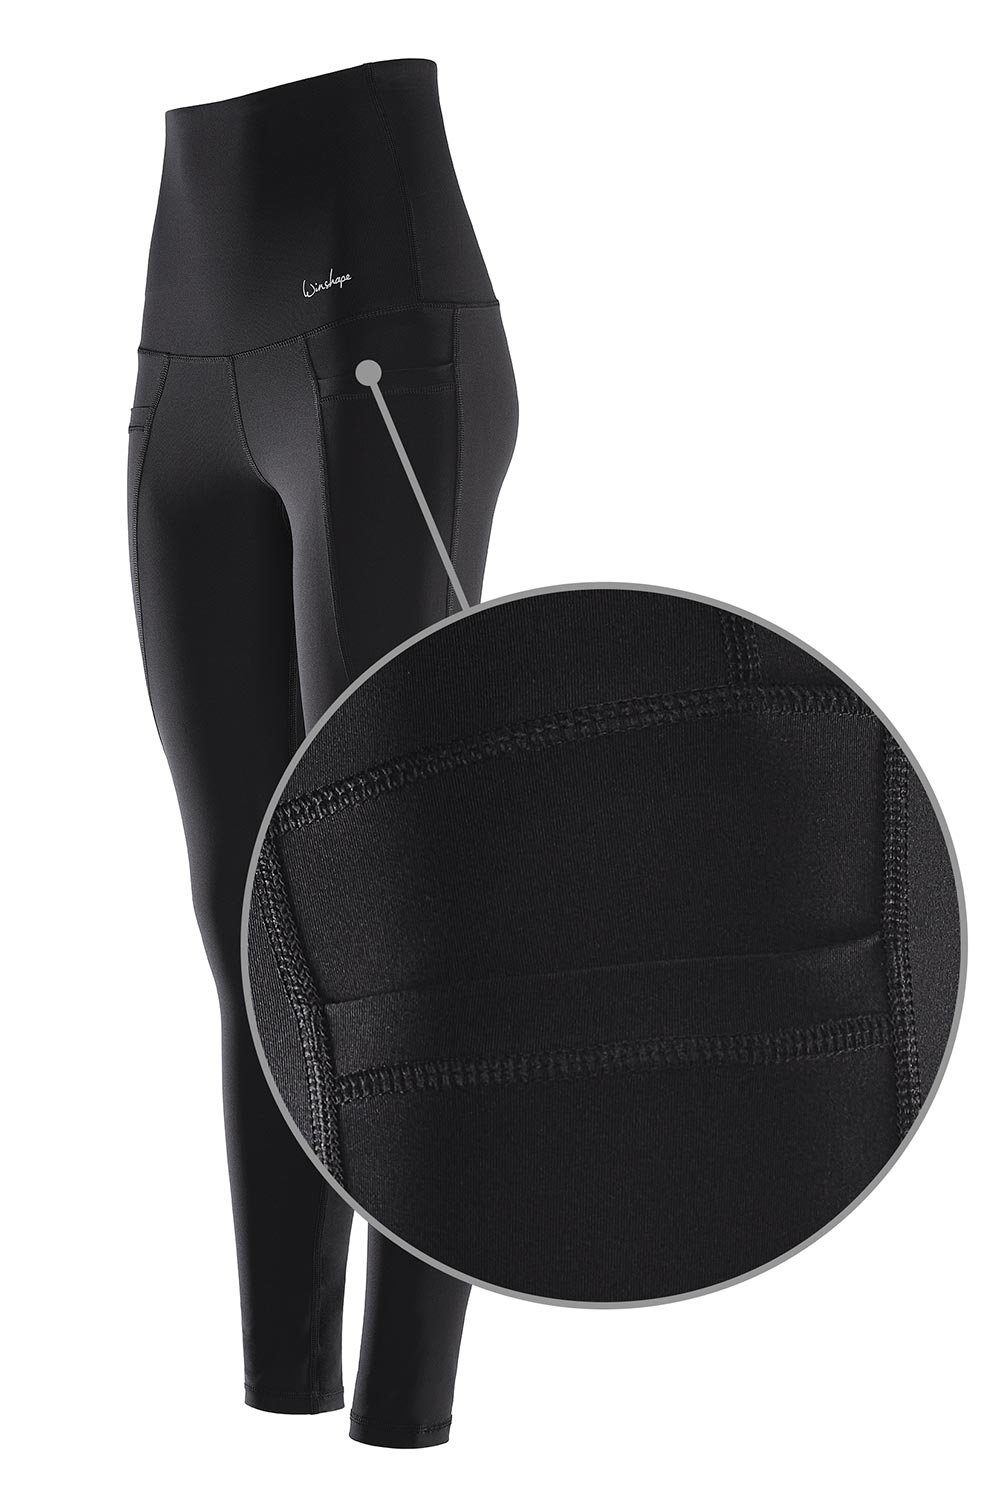 Winshape Tights Taschen praktischen Waist Functional Power HWL114 Leggings mit High Shape